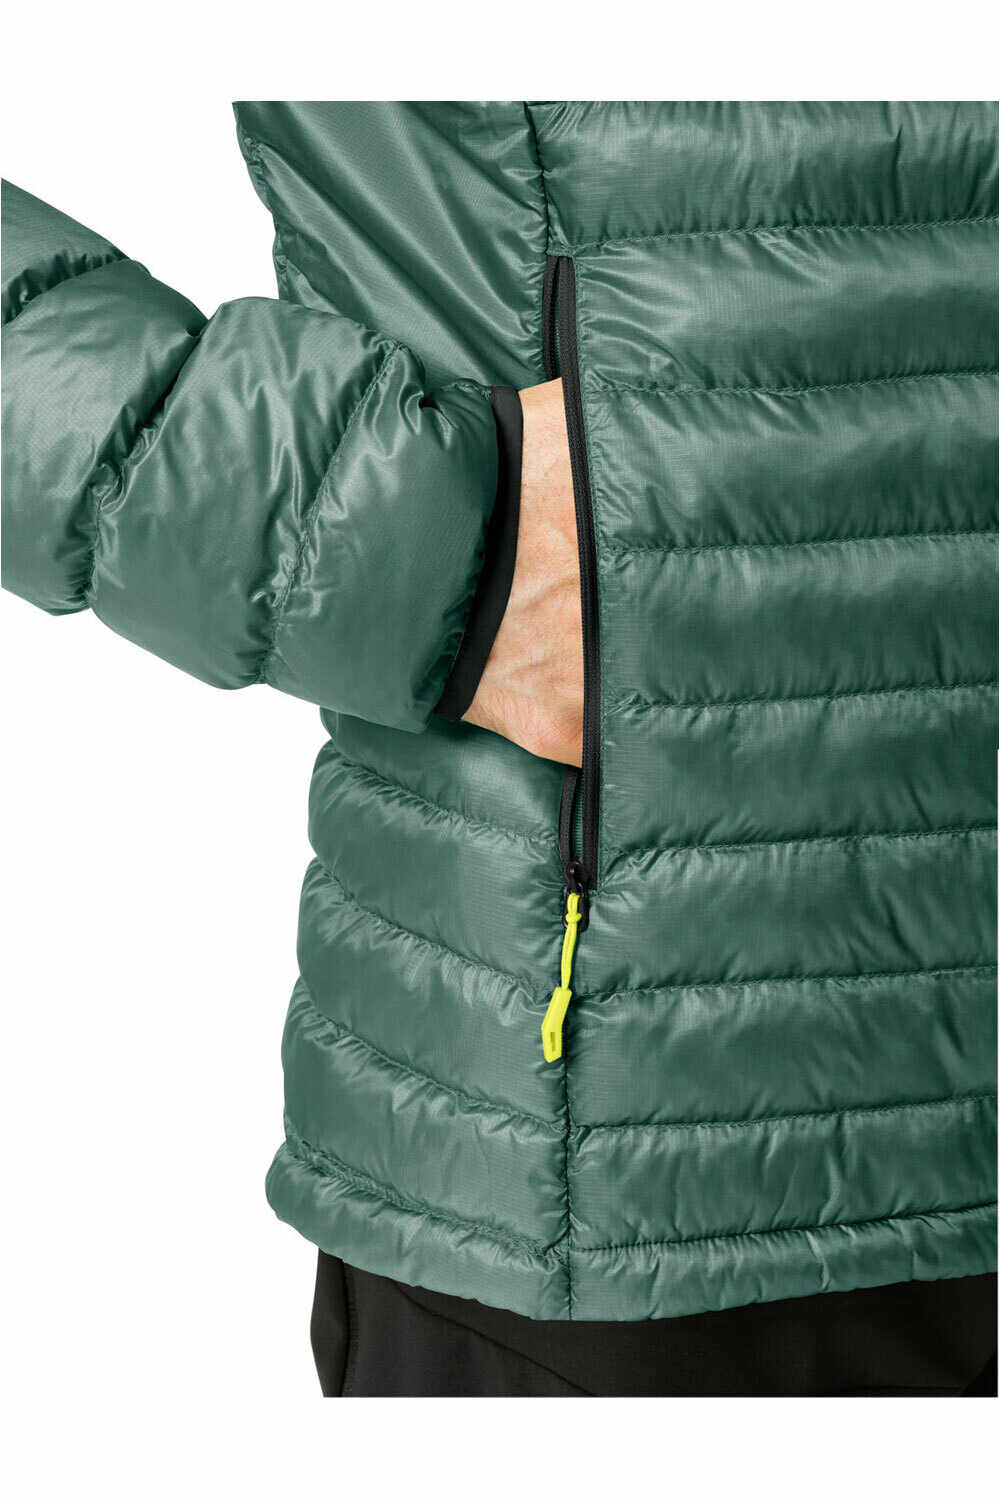 Vaude chaqueta outdoor hombre Men's Batura Hooded Insulation Jacket 03